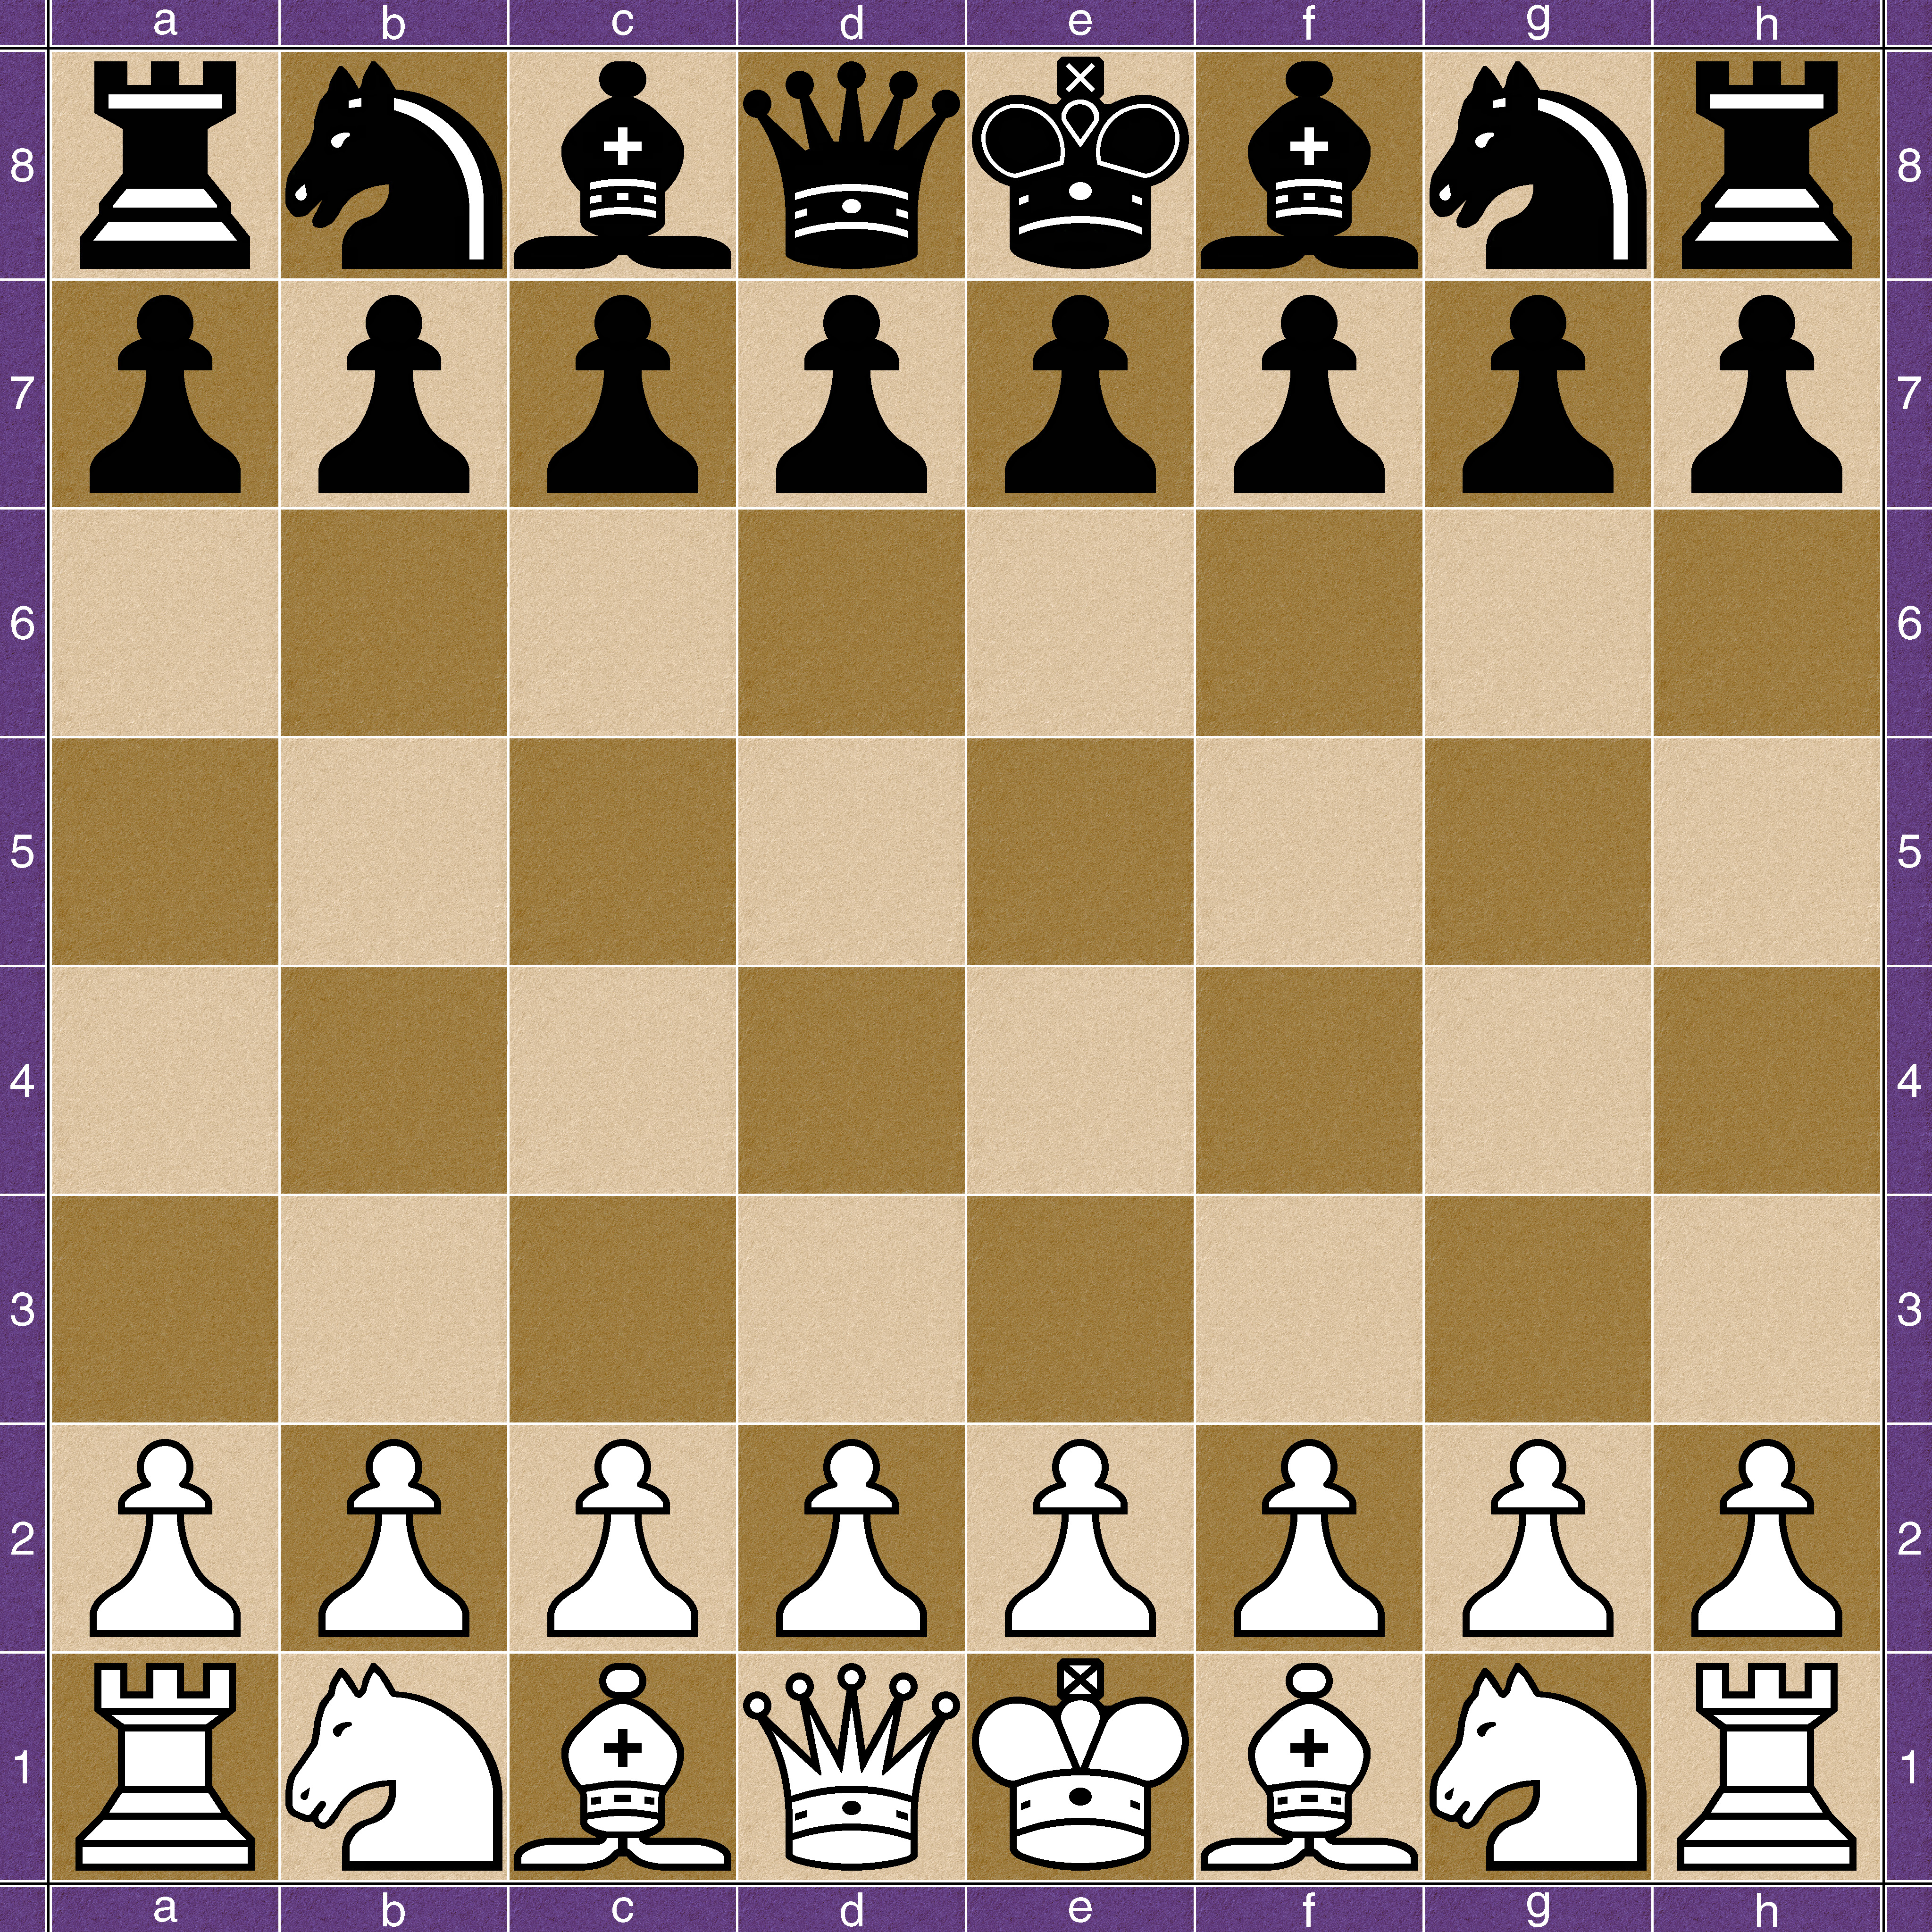 Modern chess opening theory pdf